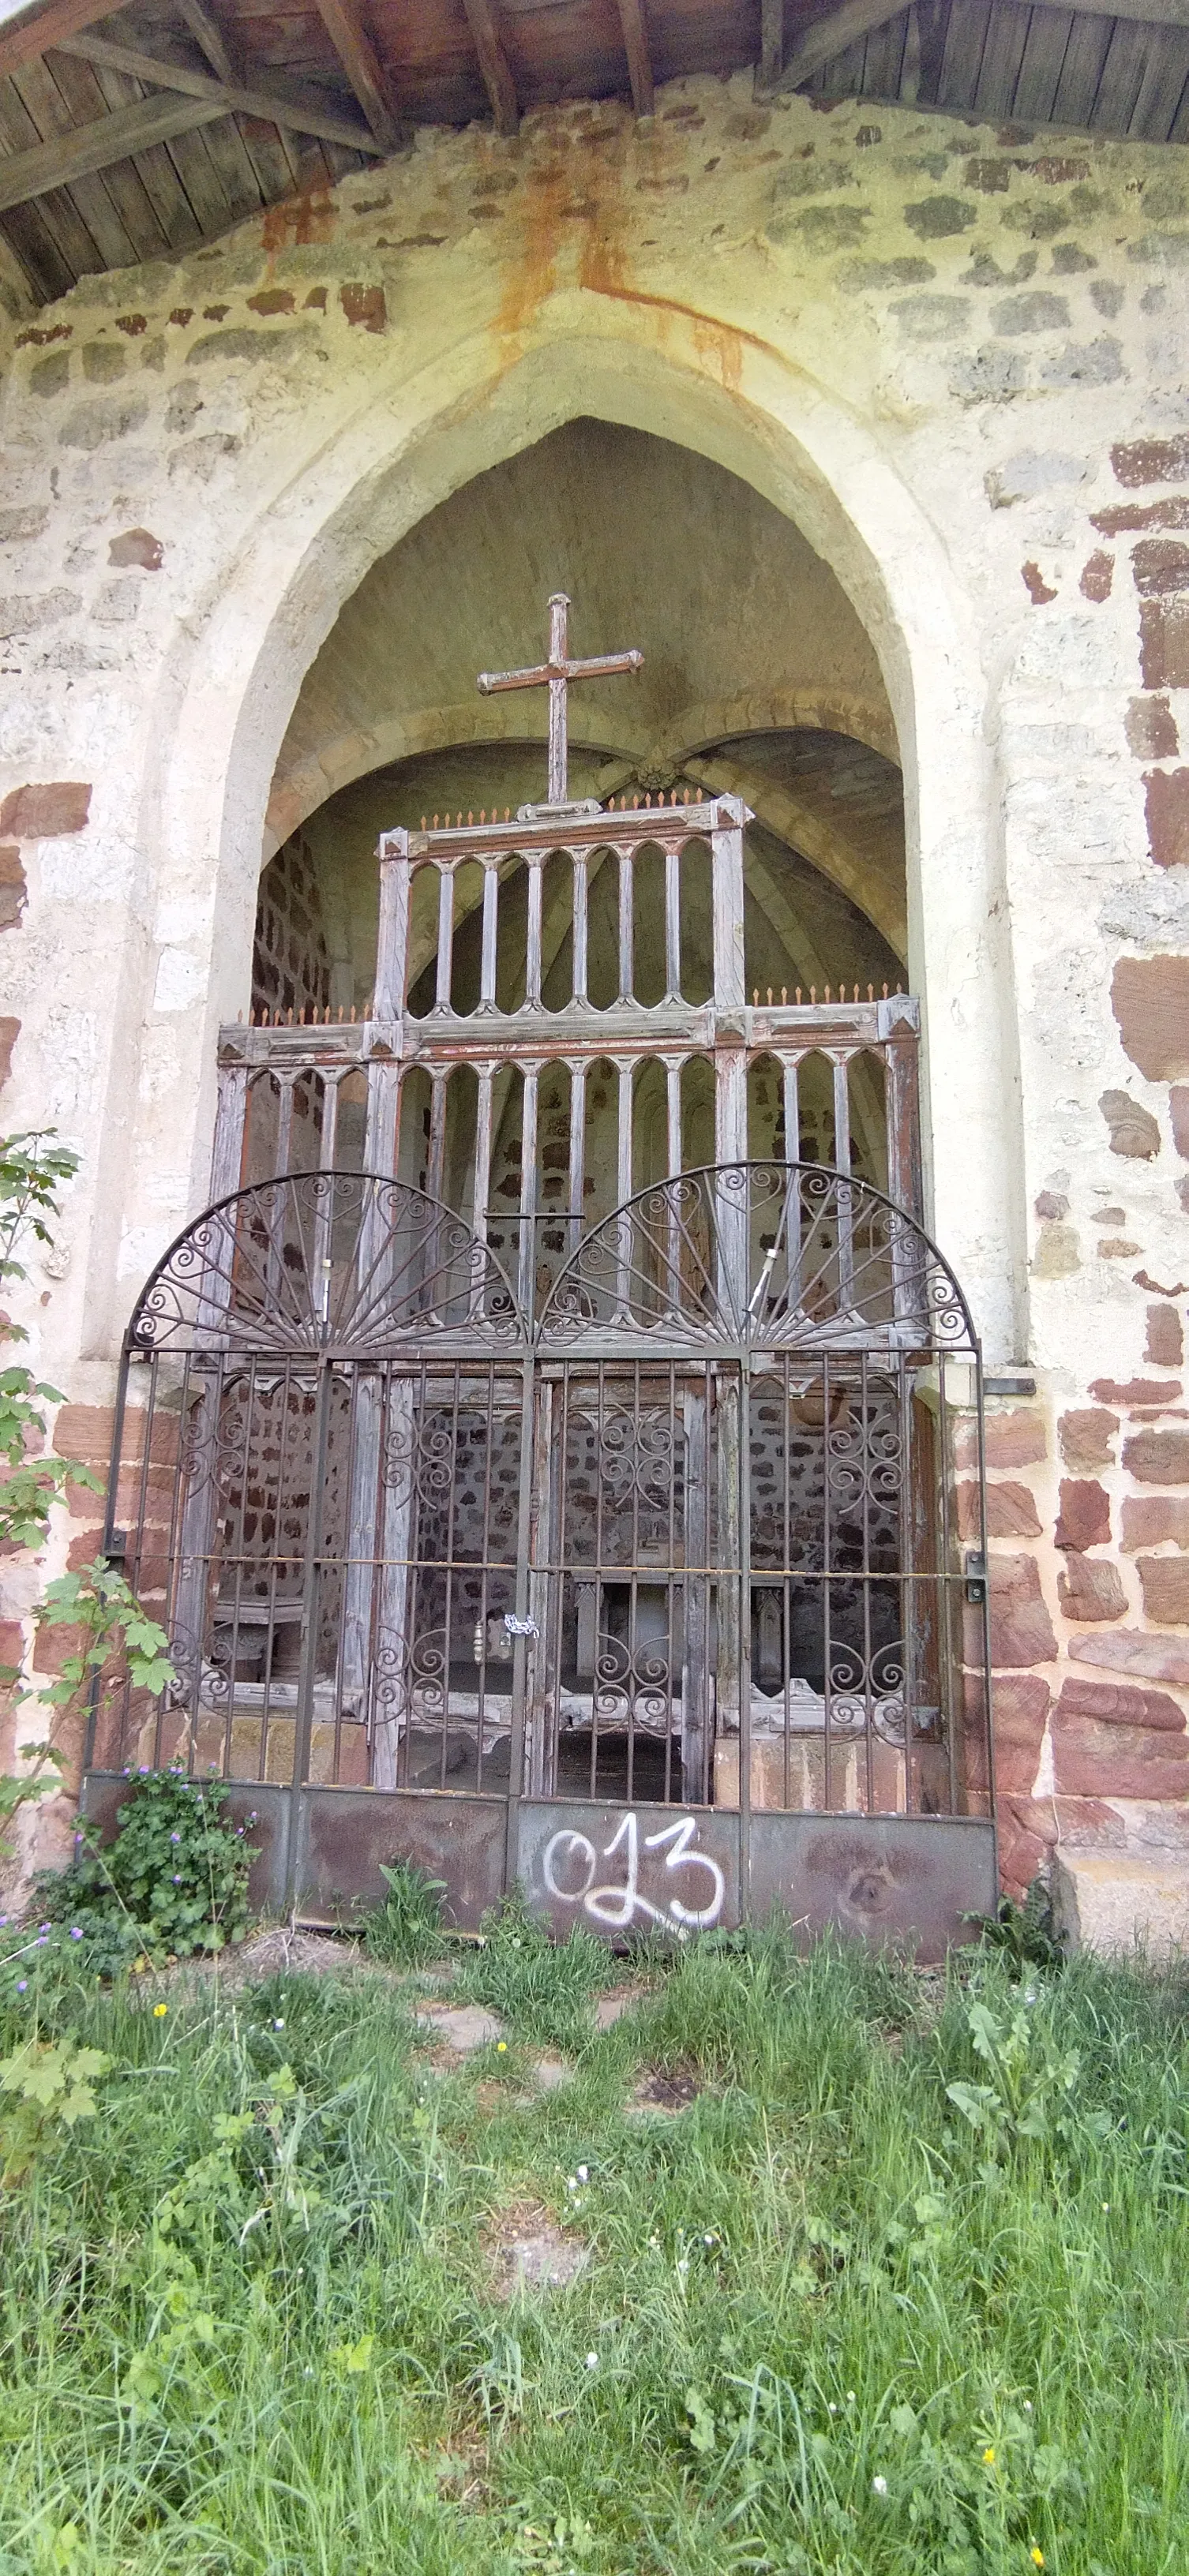 Photo showing: Imagen de la Ermita de Valdefuentes, ubicada en la carretera N-120 en la provincia de Burgos